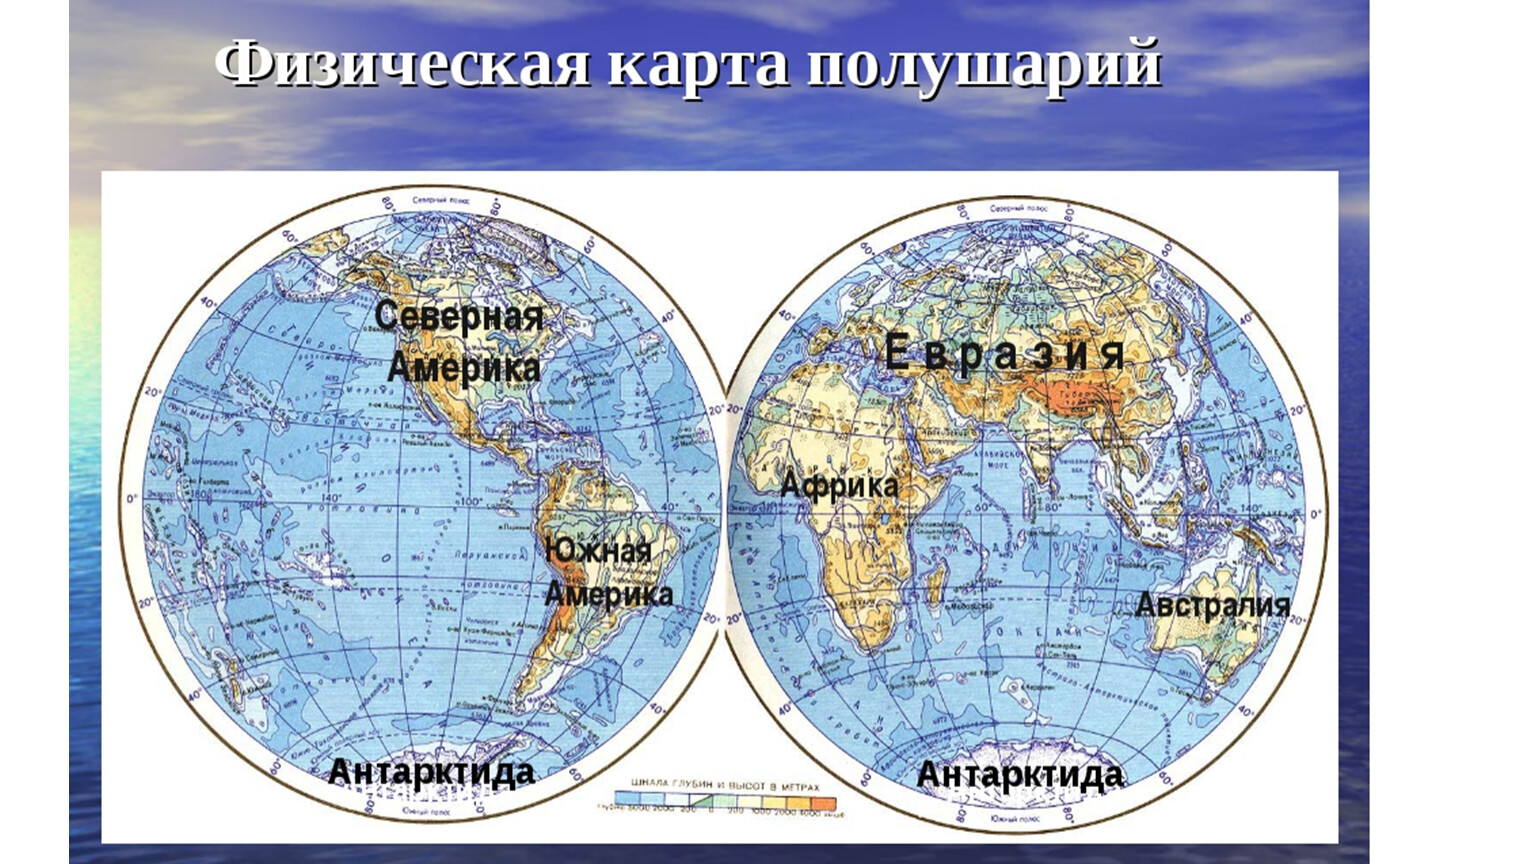 Материки в северном и восточном полушарии. Расположение материков и океанов на карте полушарий. Карта полушарий с материками и Океанами. Карта полушарий земли с материками. Карта полушарий с материками и Океанами крупно.